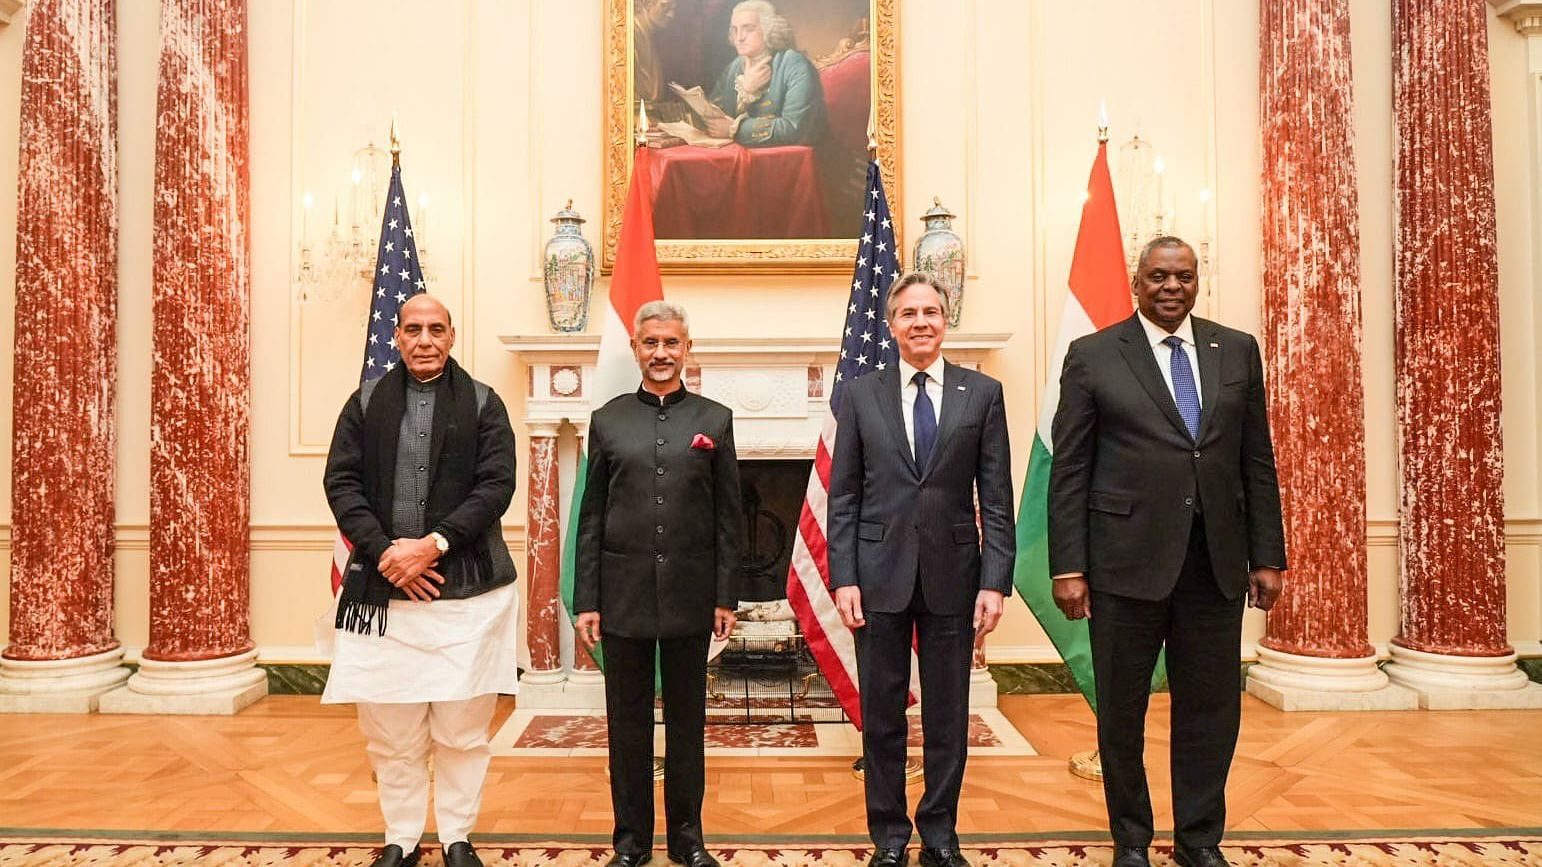 <div class="paragraphs"><p>रक्षा मंत्री राजनाथ सिंह और विदेश मंत्री जय़शंकर के साथ अमेरिकी समकक्ष</p></div>